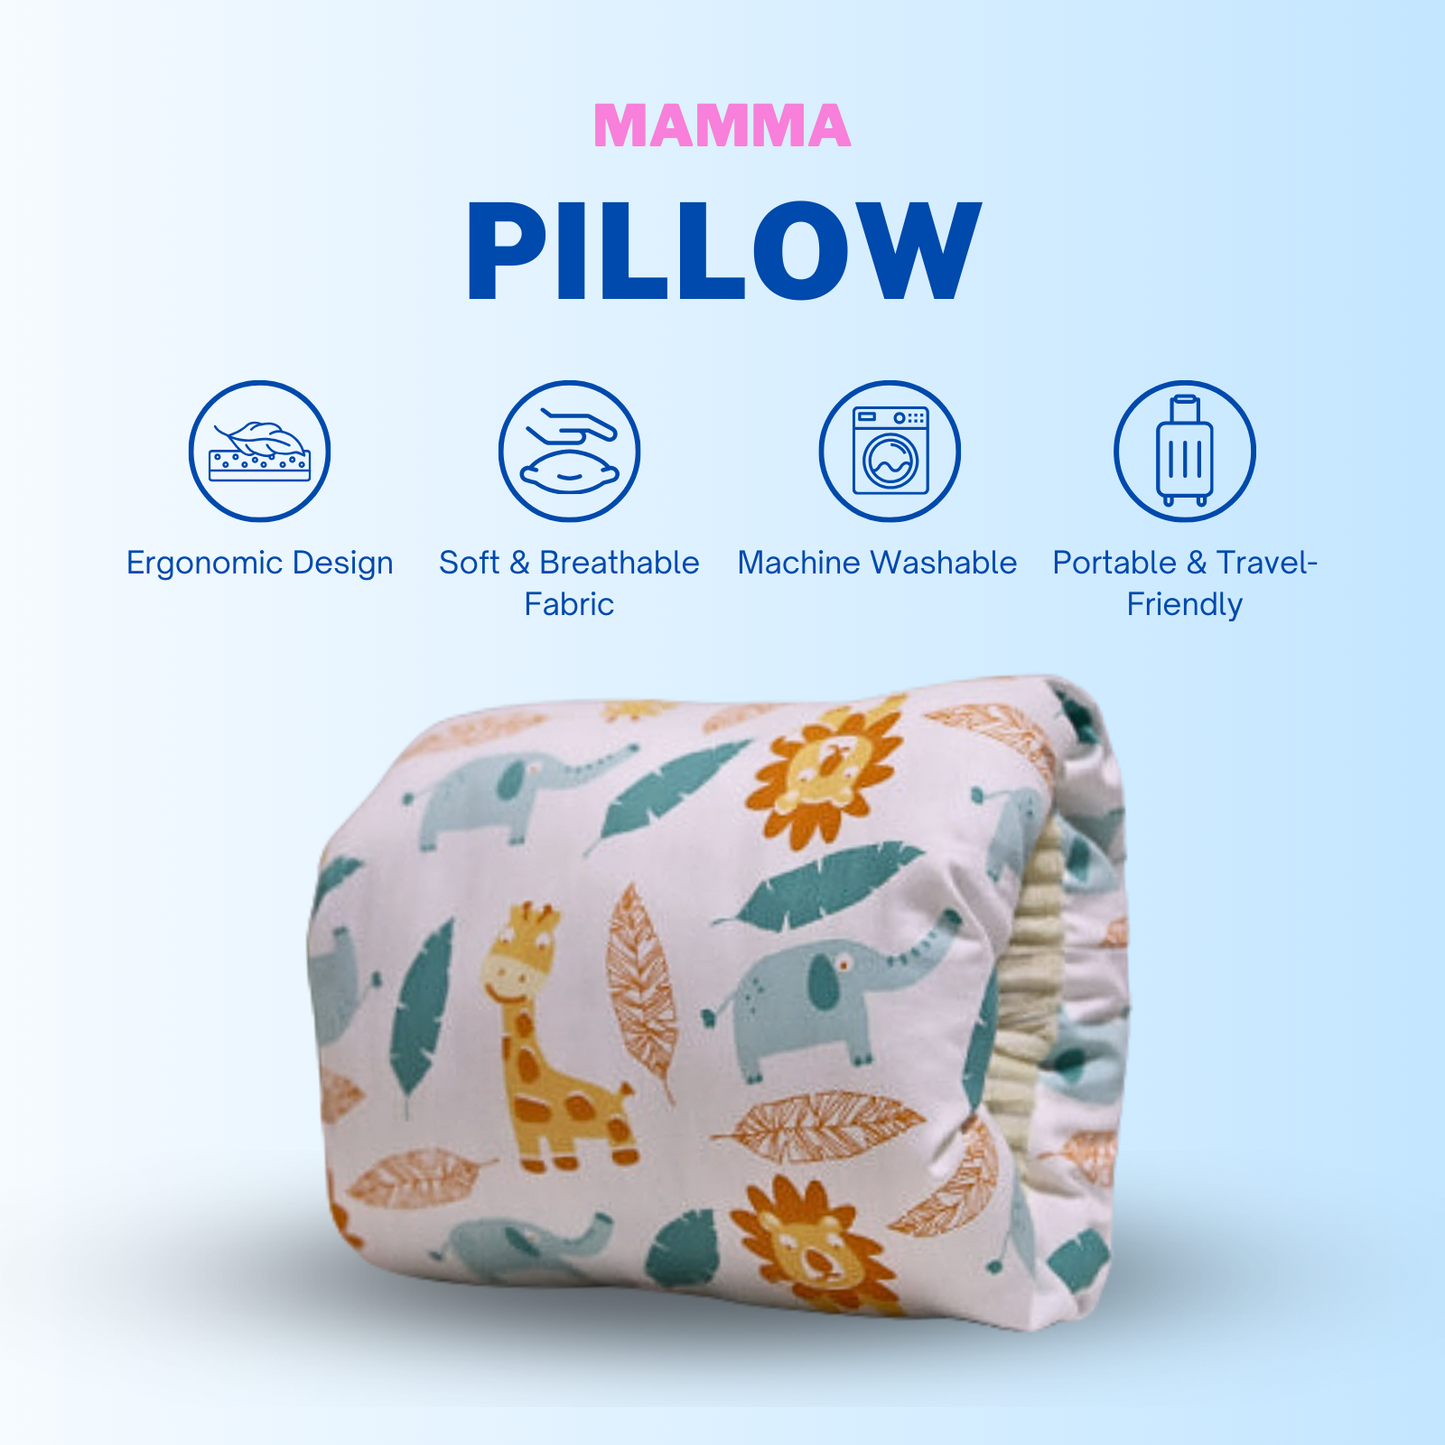 Mamma Pillow™